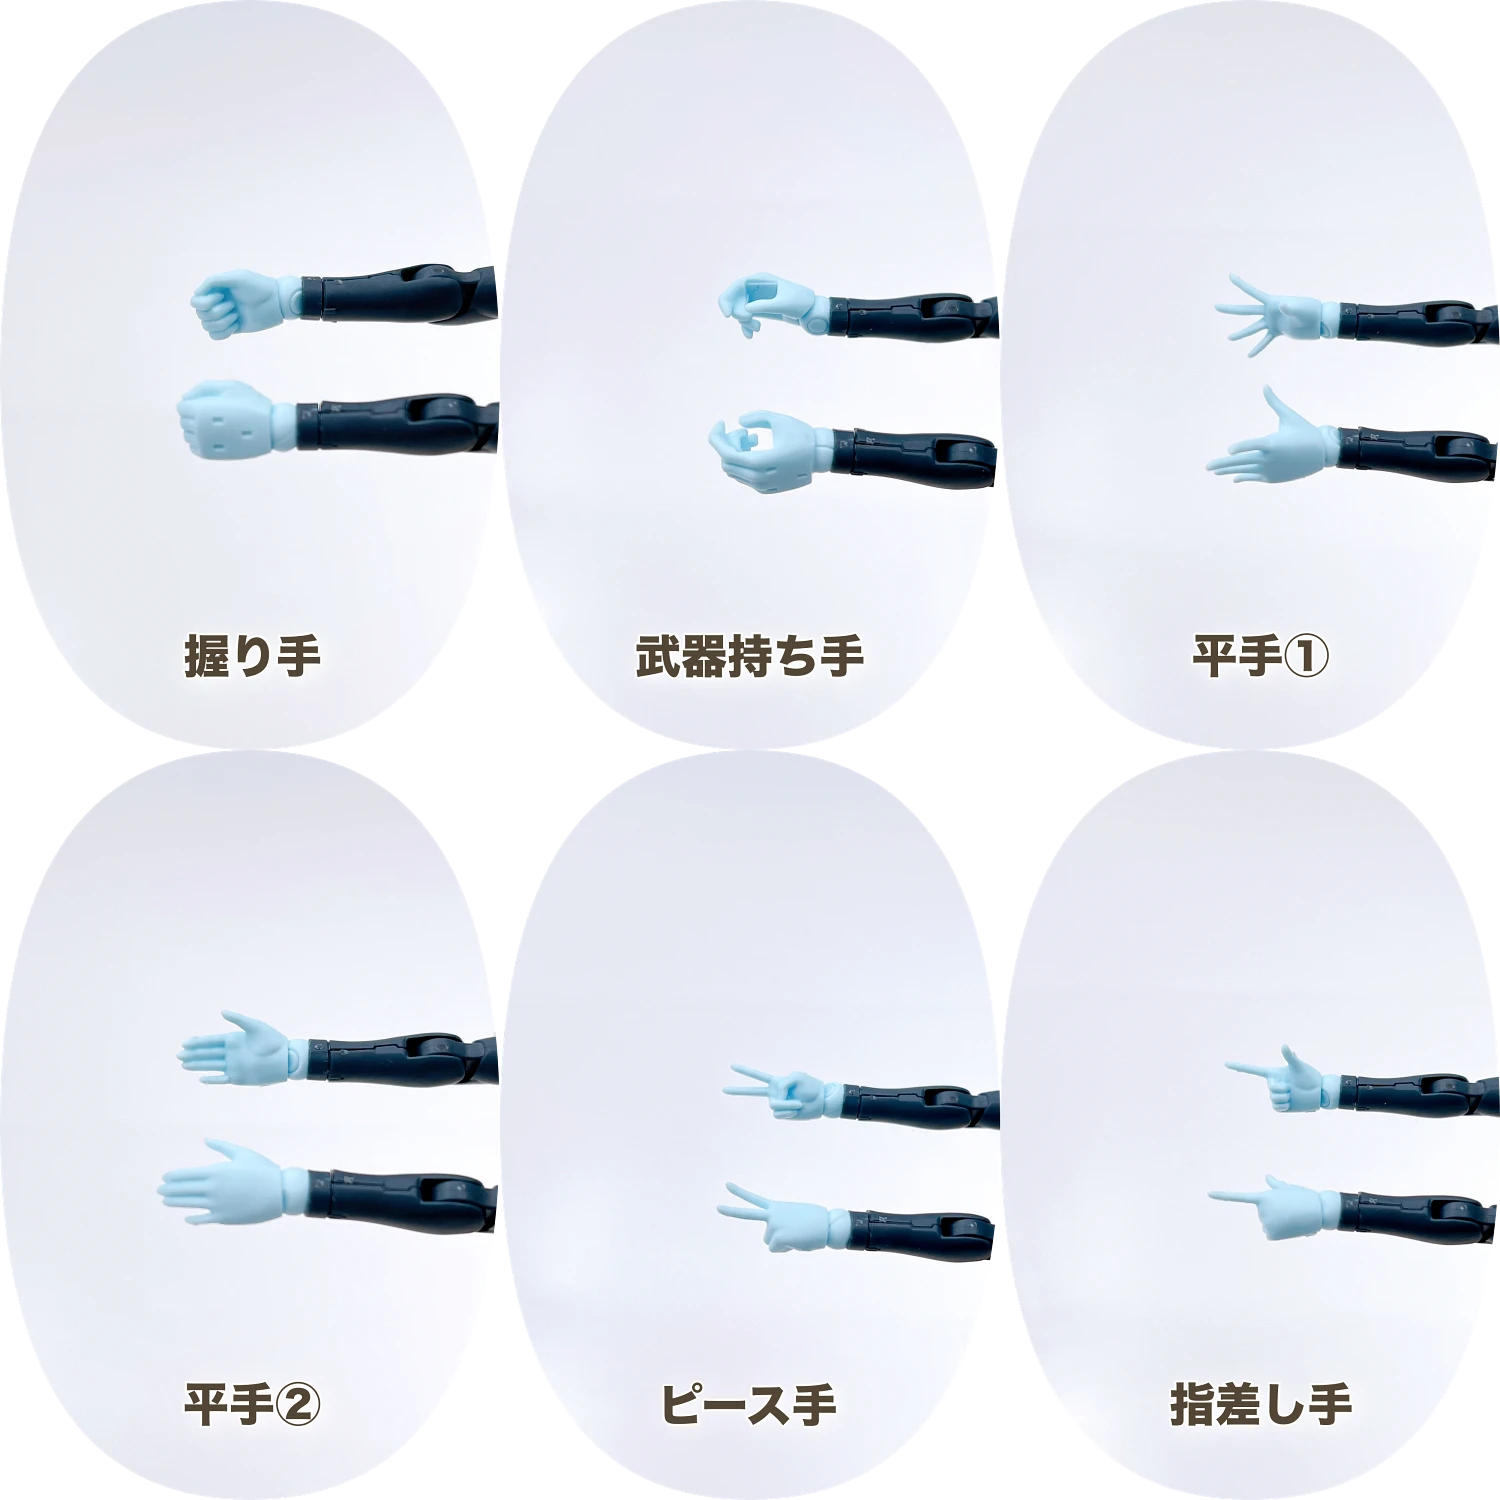 【レビュー】 30MS SIS-Ac25g ファル=ファリーナ(コンダクターフォーム)の手首パーツの画像01